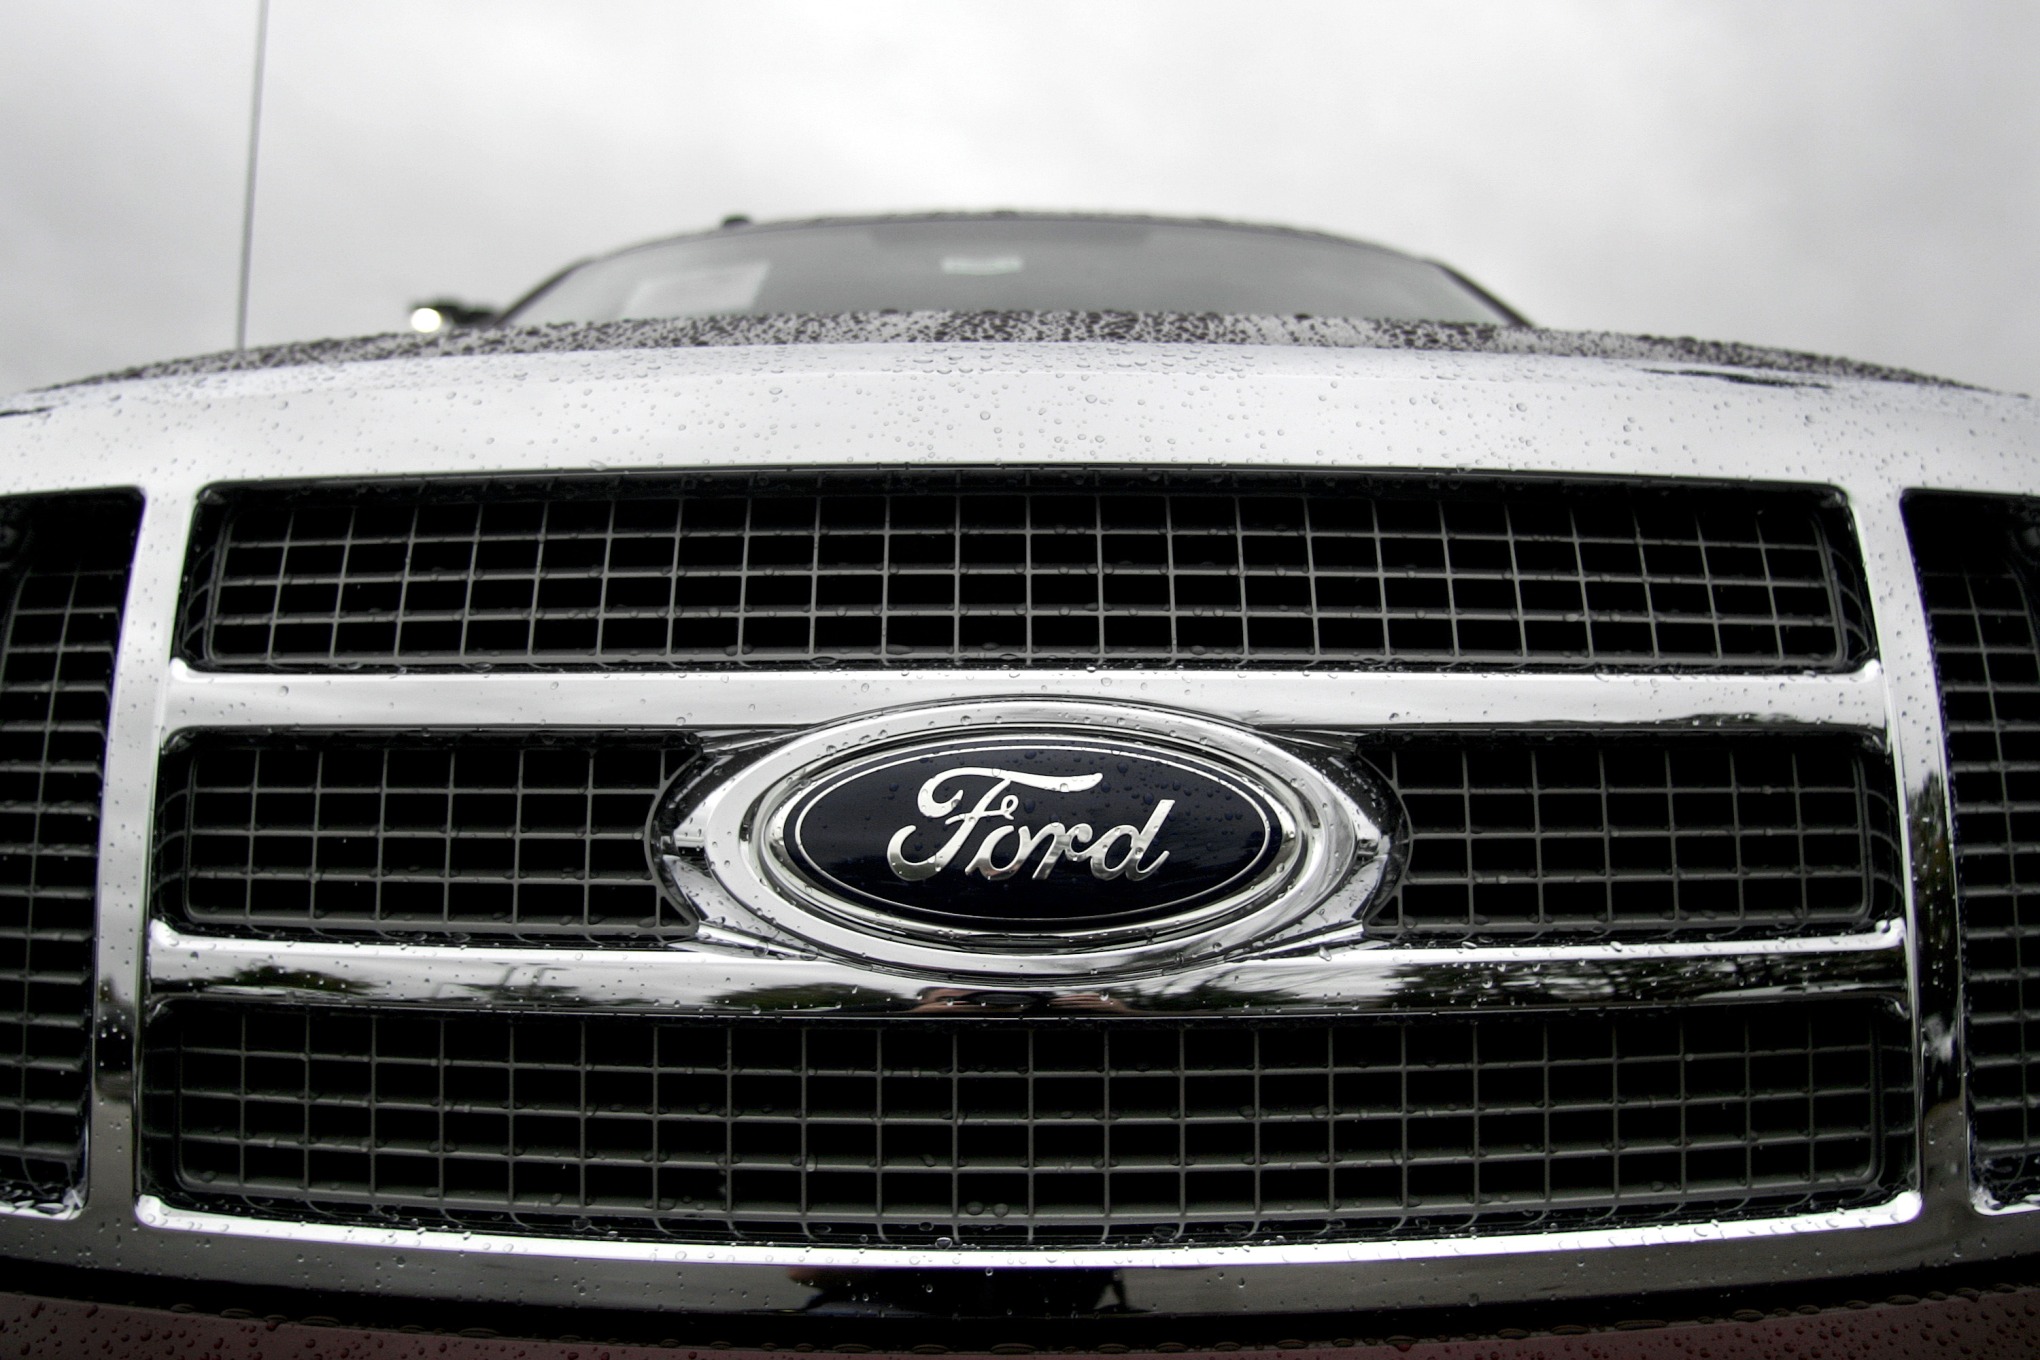 Ford lança a Ford Pro, nova estrutura global de veículos